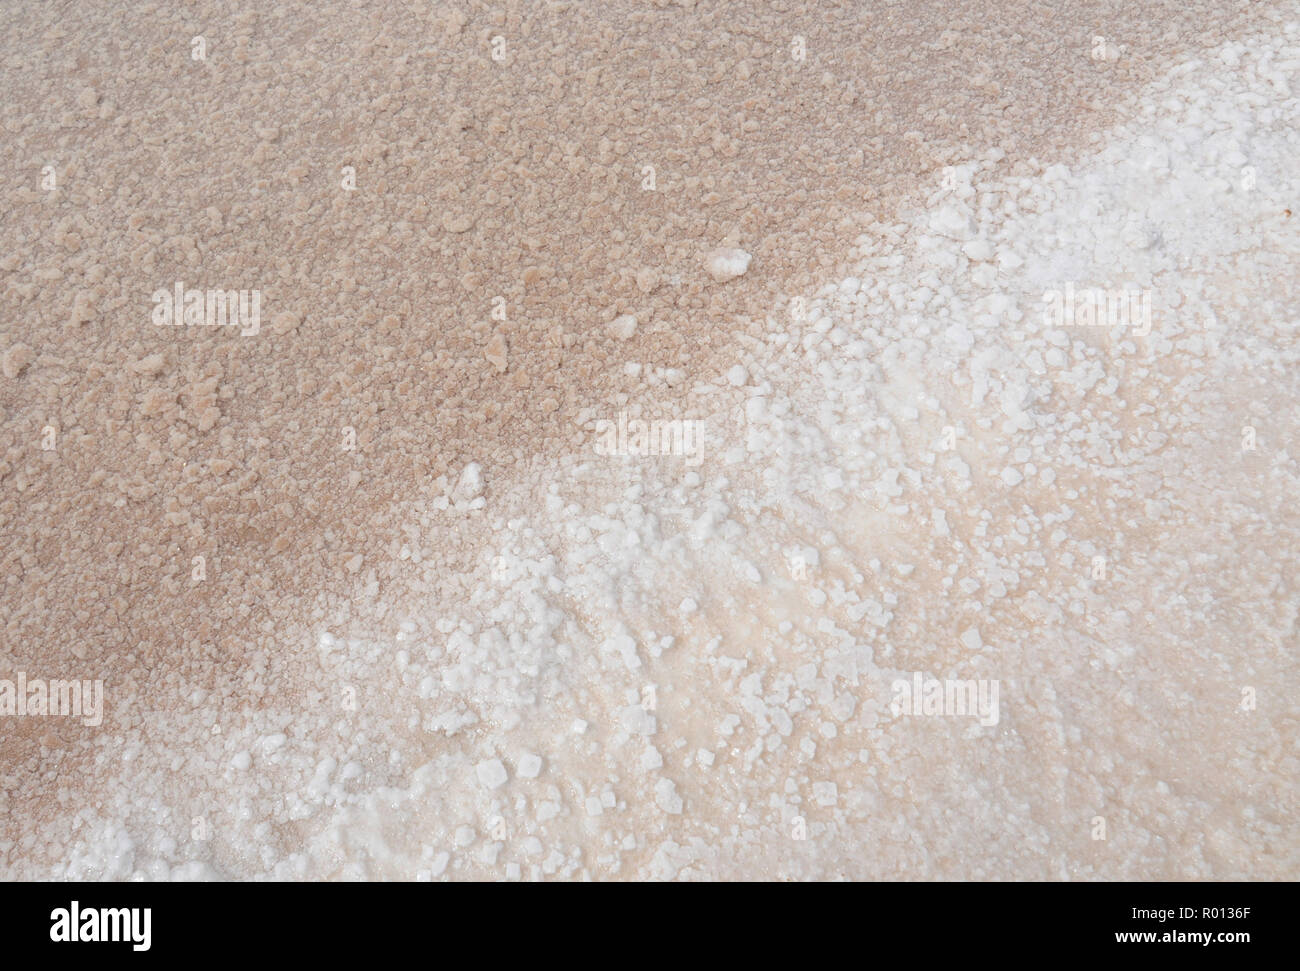 Februar 24, 2010 - Salar de Uyuni, Bolivien: Nahaufnahme von Sole (Wasser gesättigt mit Salz) Im Gegensatz zu den reinen weißen Farbe der Salzkruste in der Salar de Uyuni. Diese große Wüste Salz hält über 50 % der Lithium-ionen Erdgasreserven der Welt. Contraste entre l'eau Salee plus foncŽe et la Blancheur de la couche de Sel dans le Salar de Uyuni, un immense Wüste de Sel qui abrite plus de 50% des behält sich mondiales de Lithium. *** Frankreich/KEINE VERKÄUFE IN DEN FRANZÖSISCHEN MEDIEN *** Stockfoto